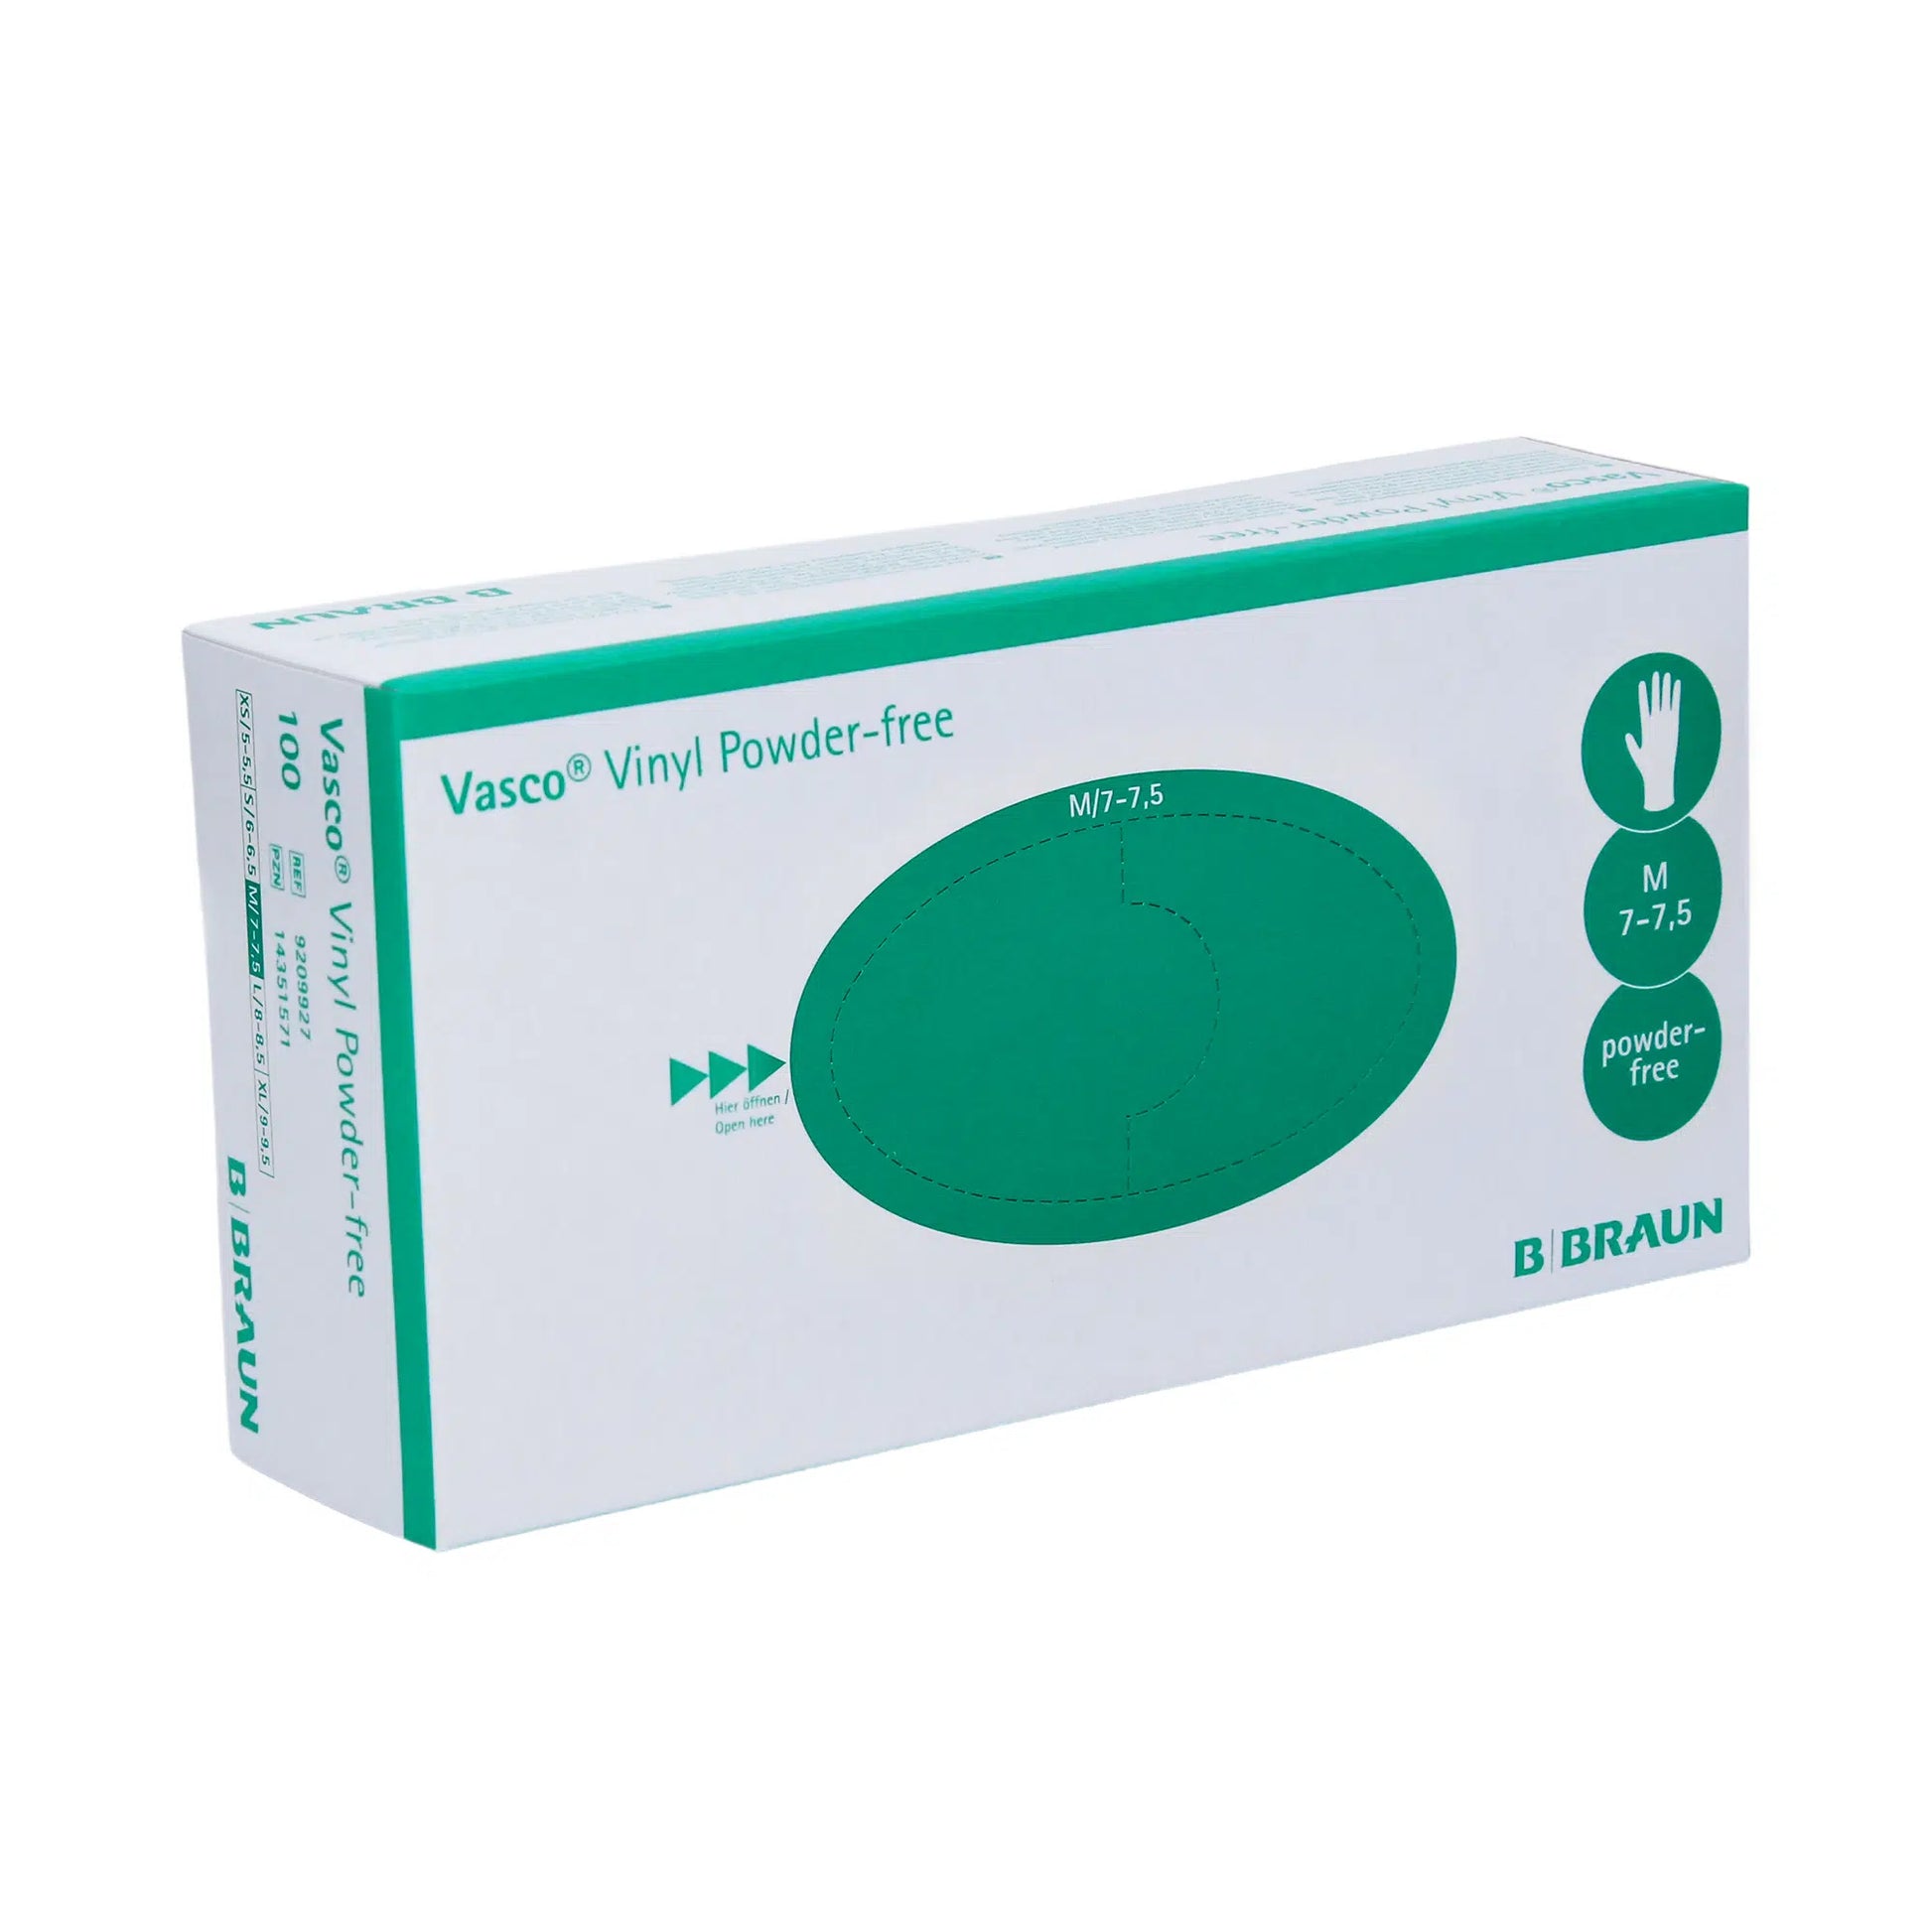 Eine Schachtel B. Braun Vasco® Vinyl Puderfreie Einmalhandschuhe von B. Braun Melsungen AG. Die Schachtel ist überwiegend weiß mit einem großen grünen Oval und einem Text mit detaillierten Produktspezifikationen.